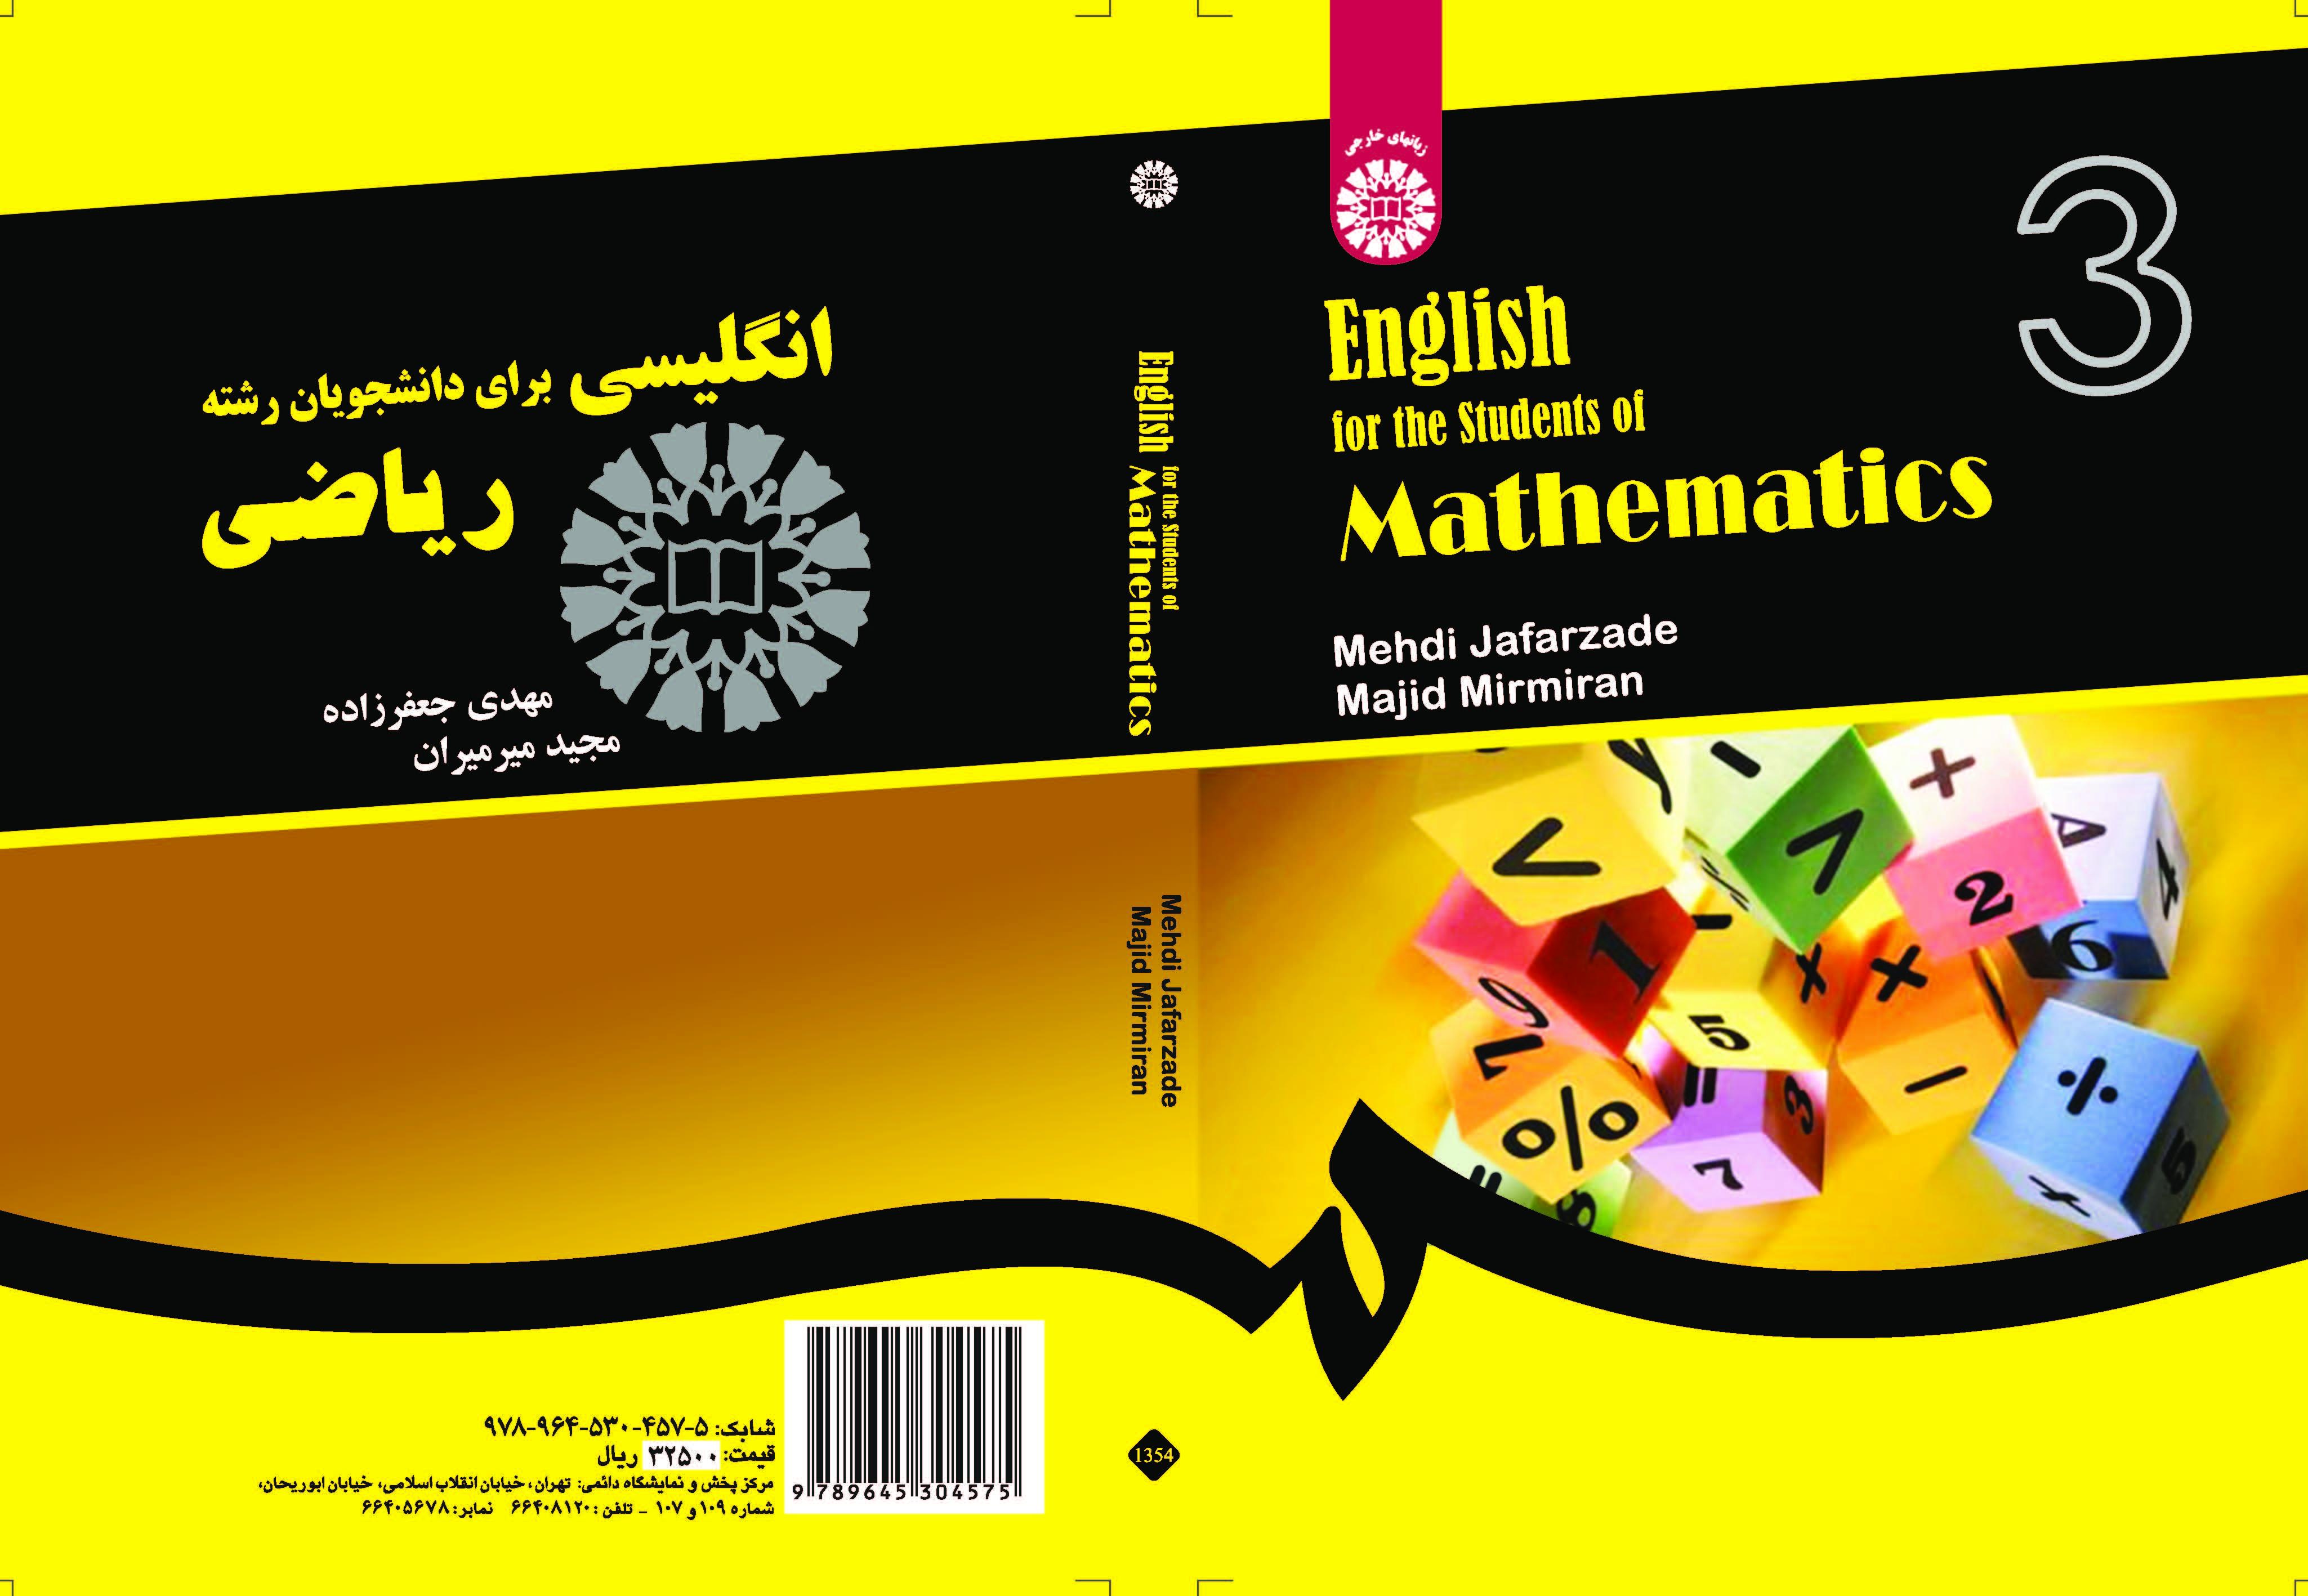 الإنجليزية لطلاب الرياضيات